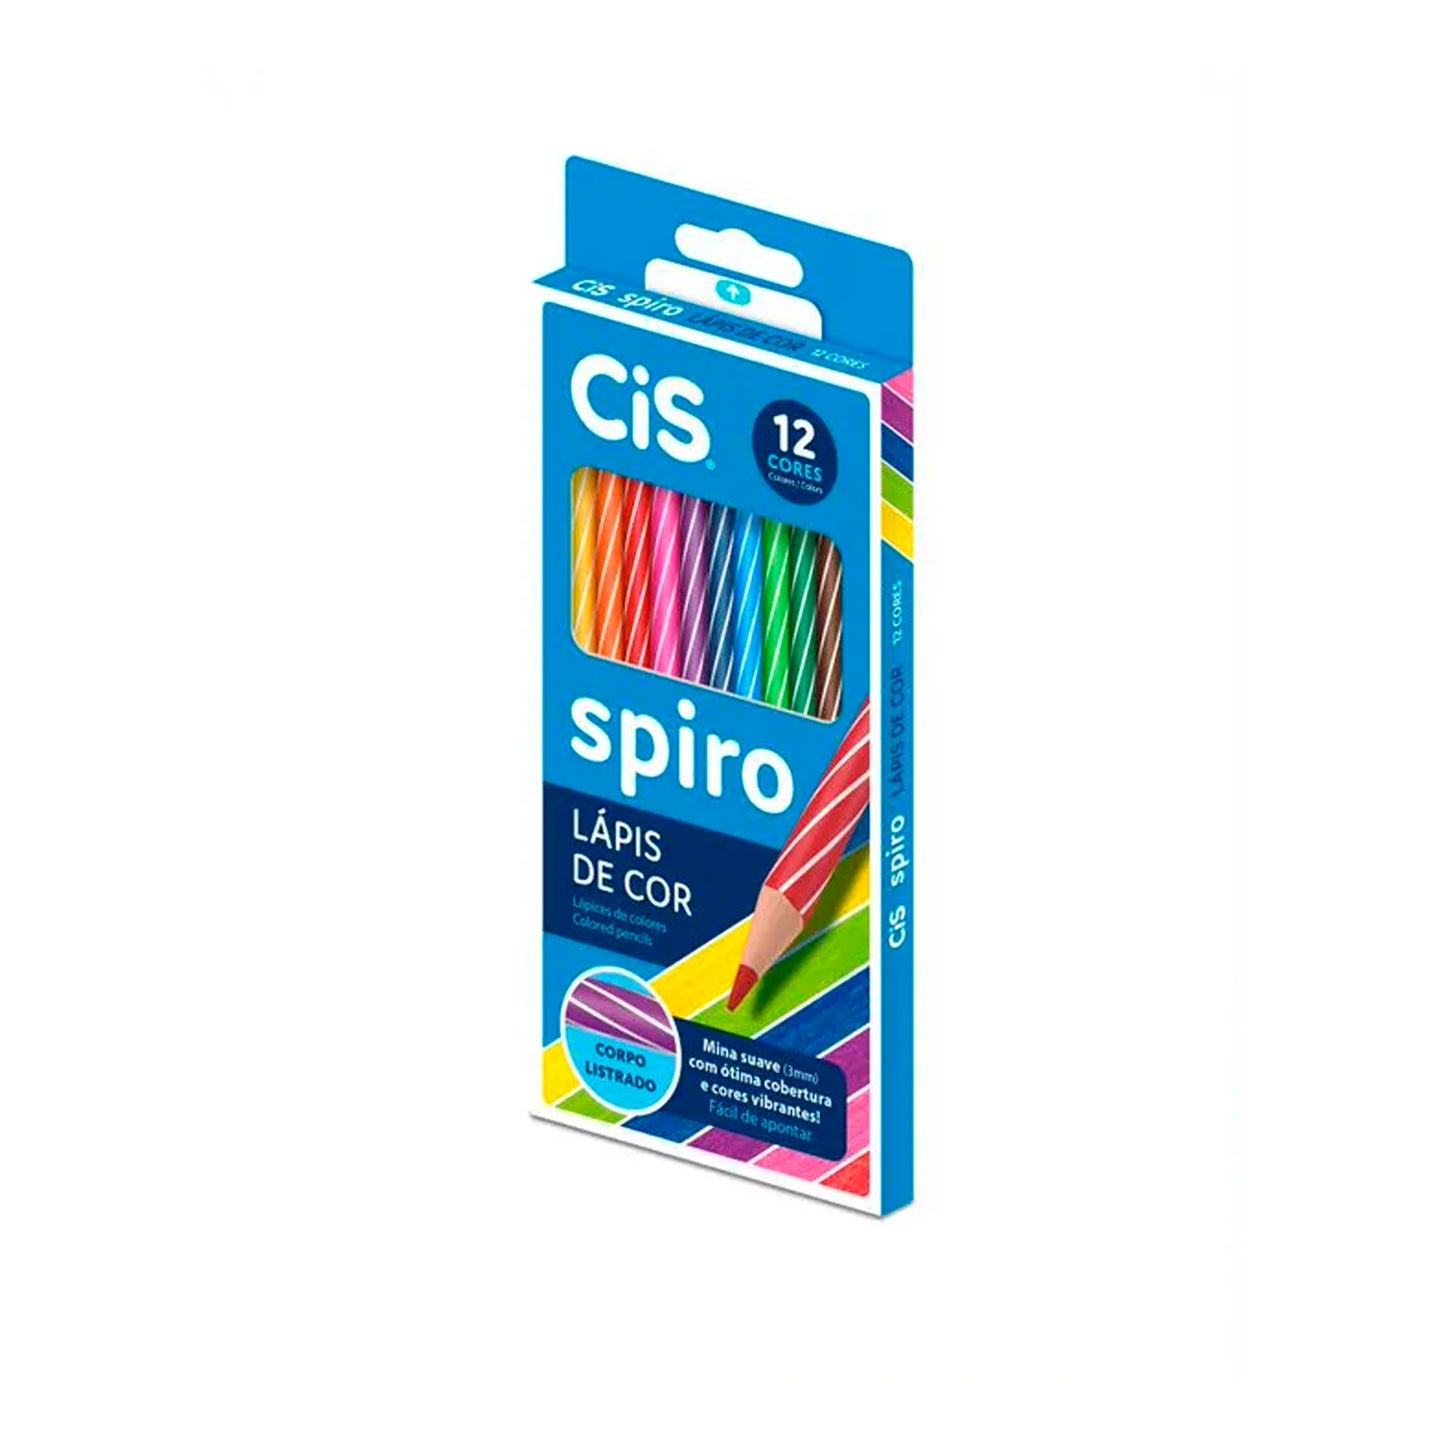 Lápis de cor - CIS - Spiro - 12 cores